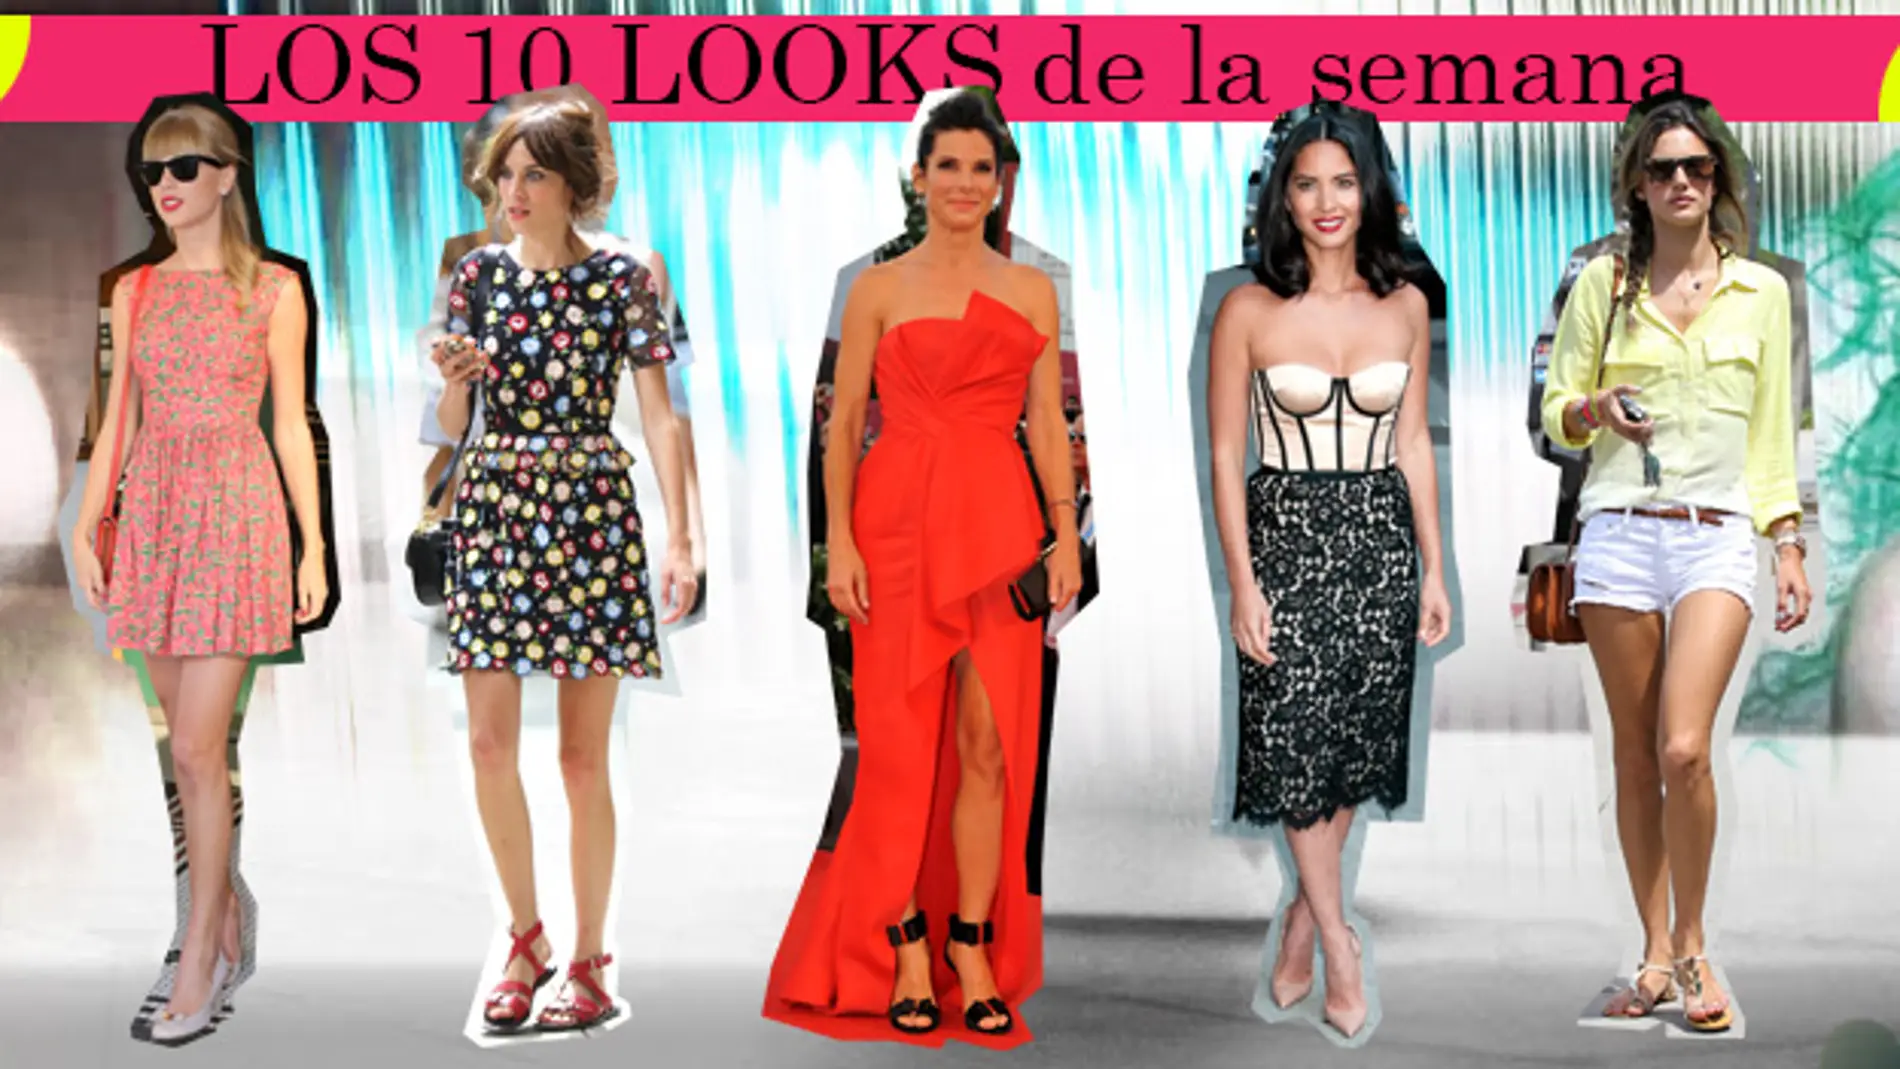 Los 10 mejores looks de la semana (26/08/2013-01/09/2013)